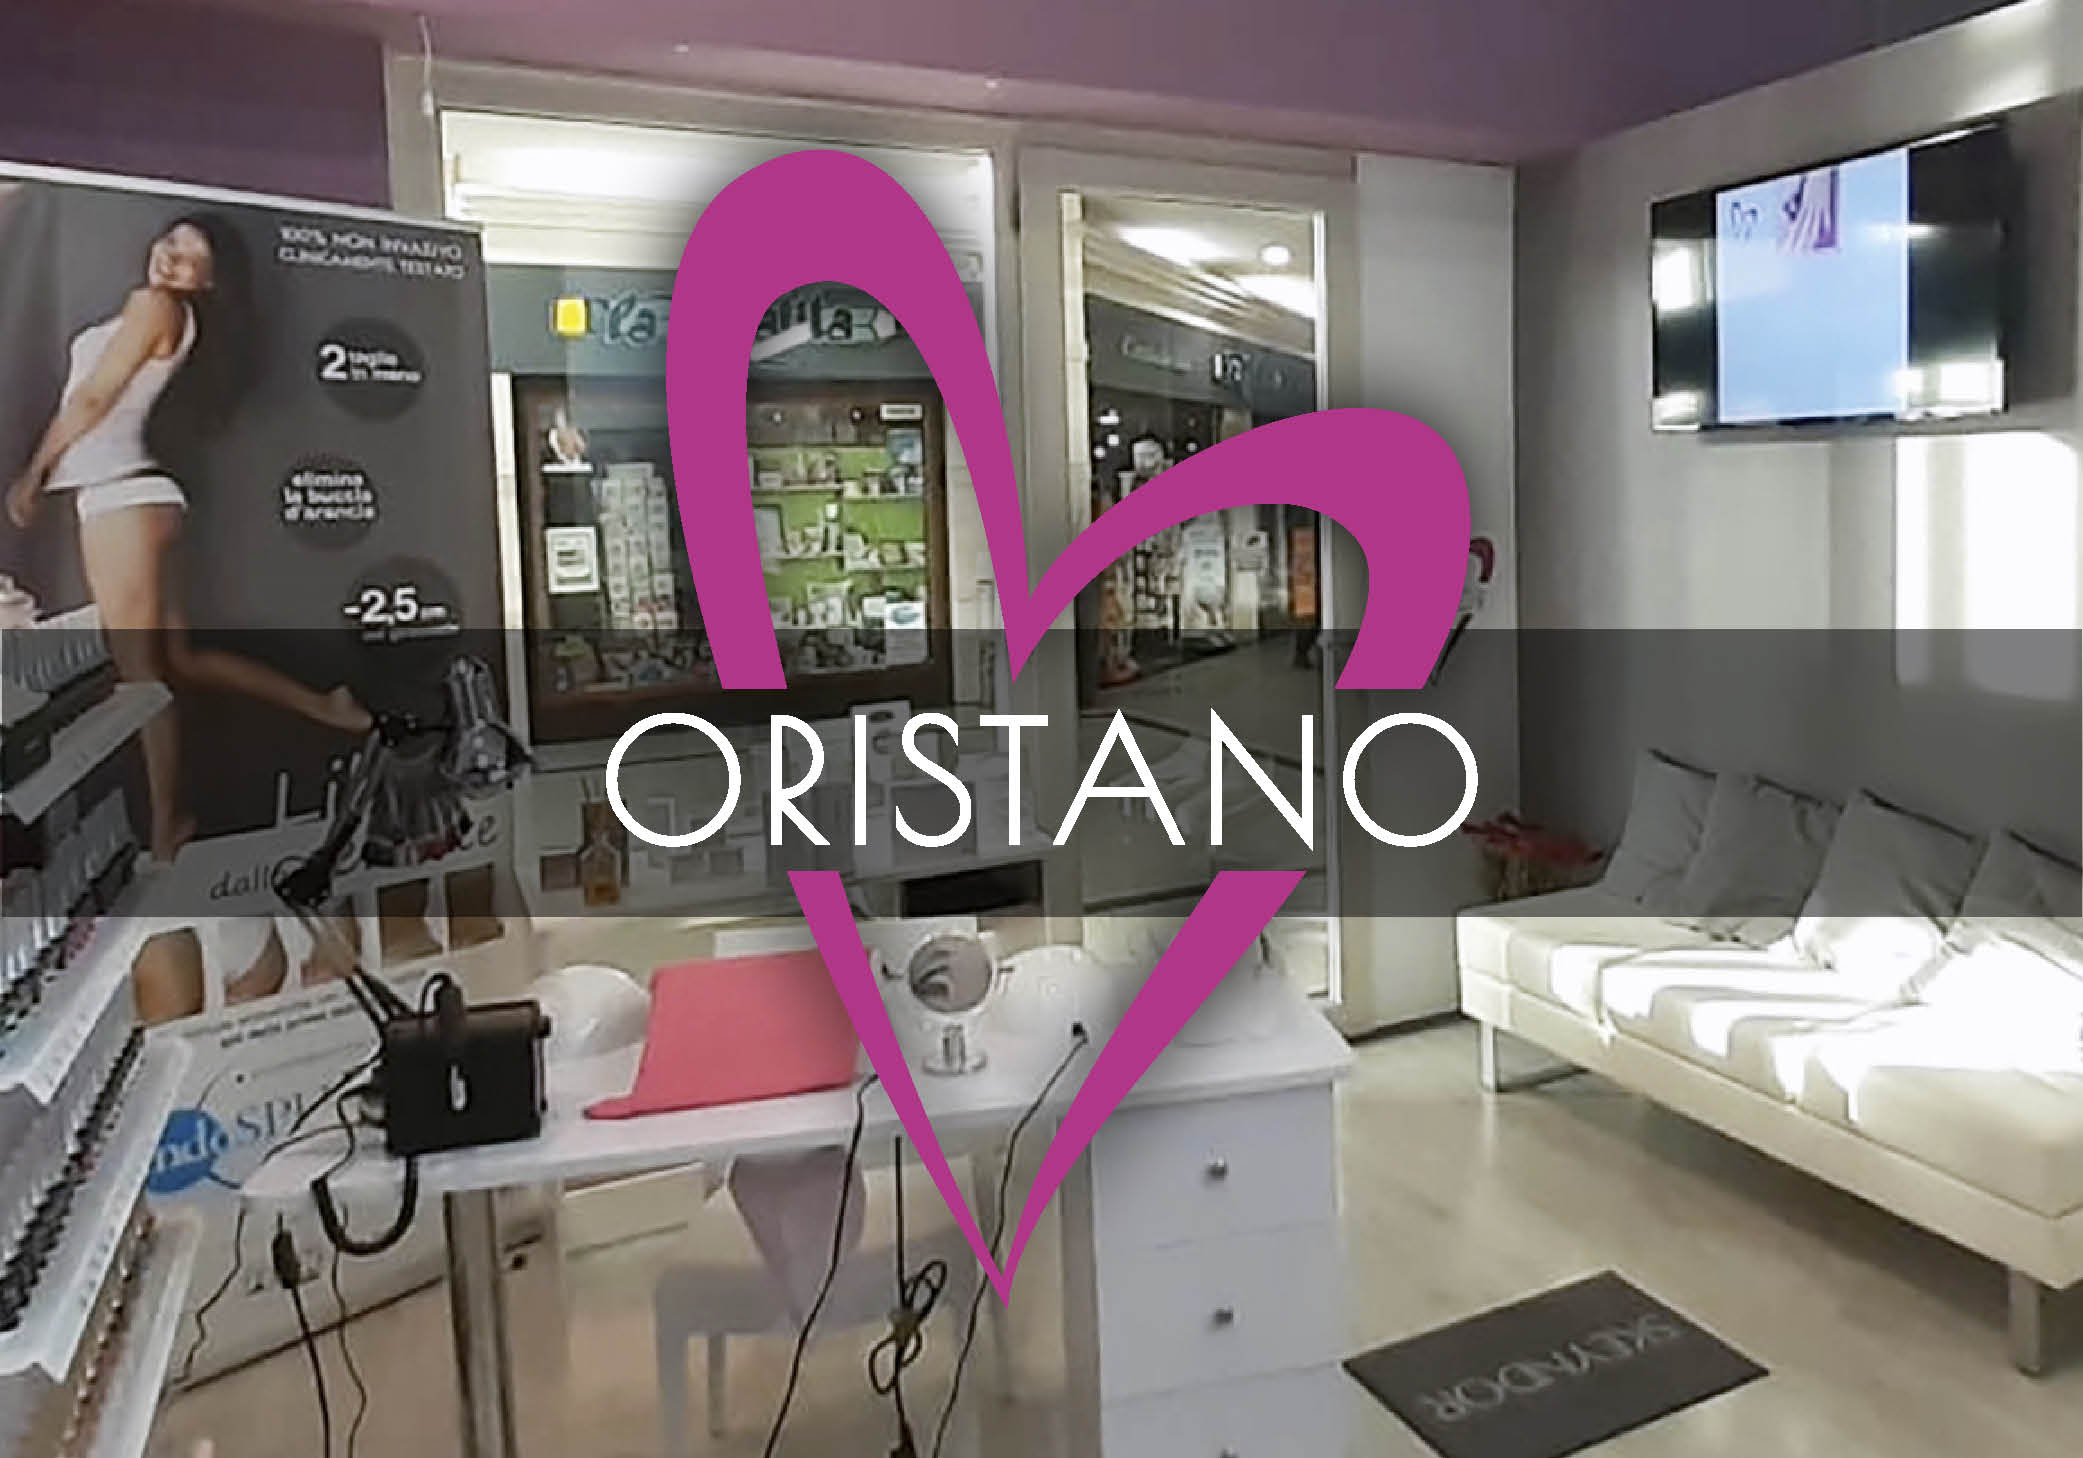 DOCTOR-centri-sito-oristano-new